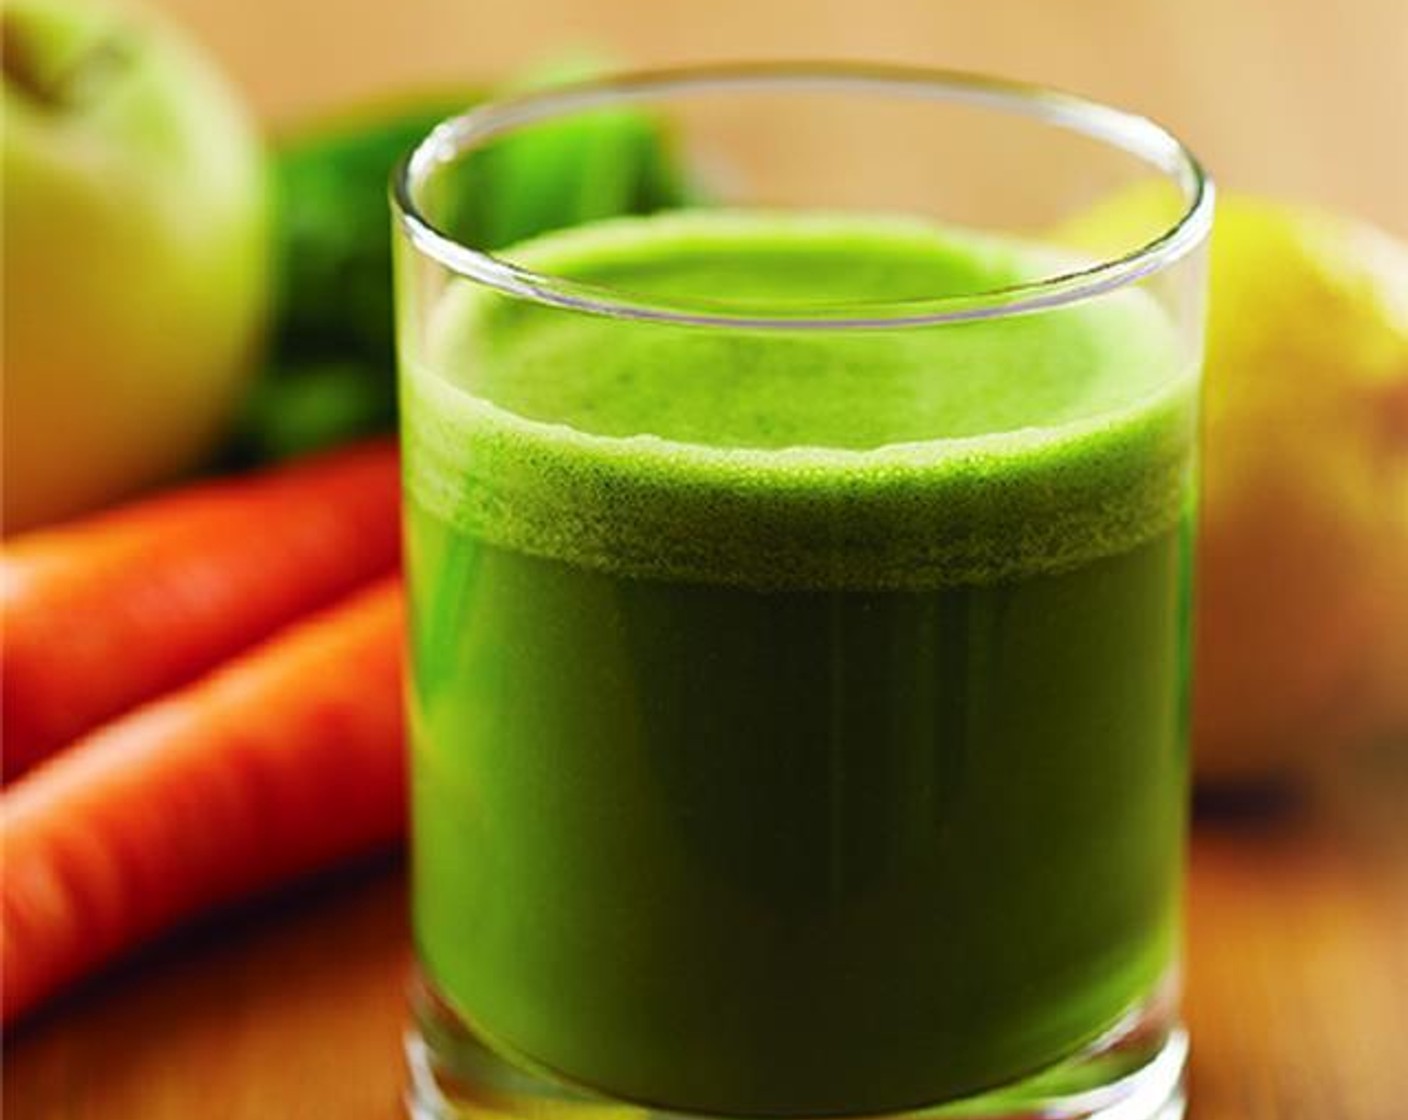 Giada's Rise & Shine Green Juice